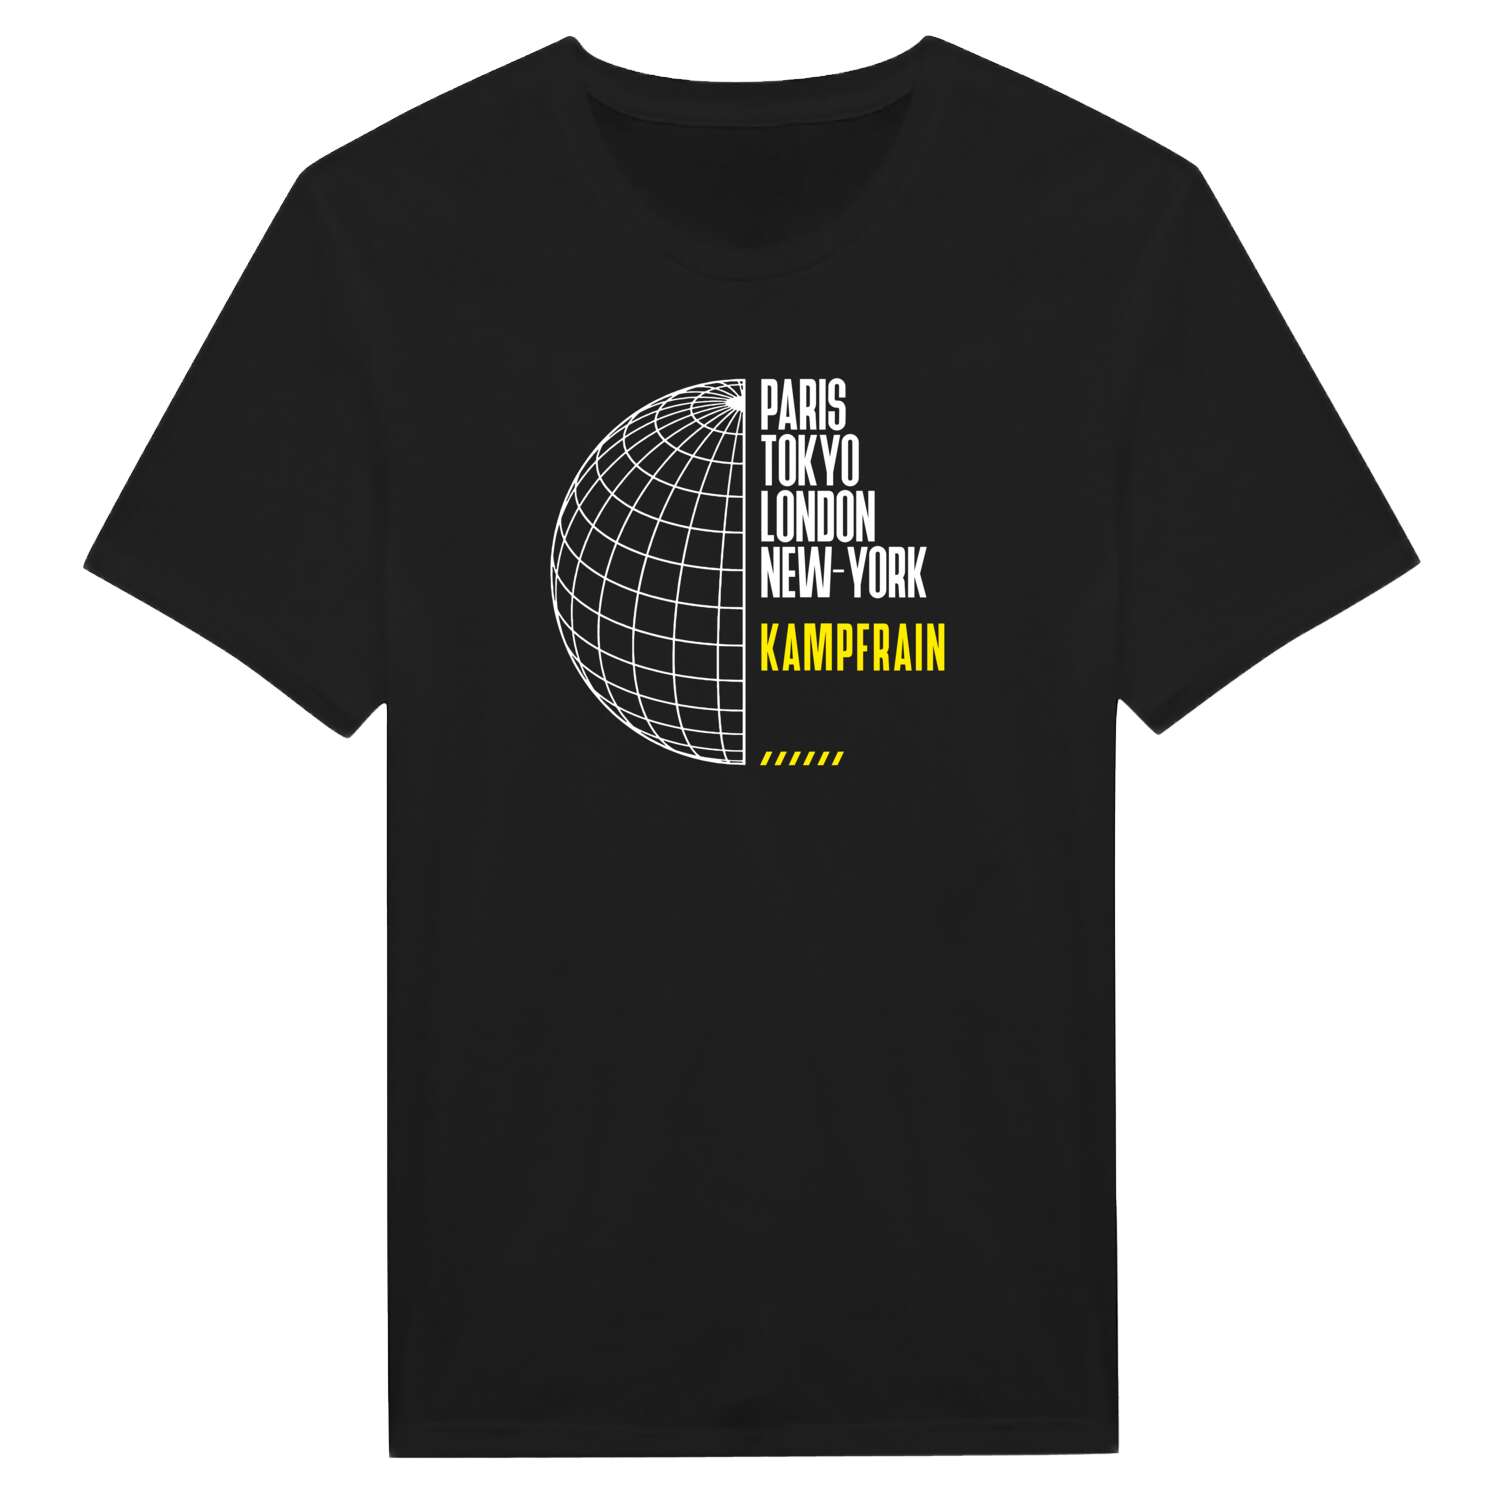 Kampfrain T-Shirt »Paris Tokyo London«